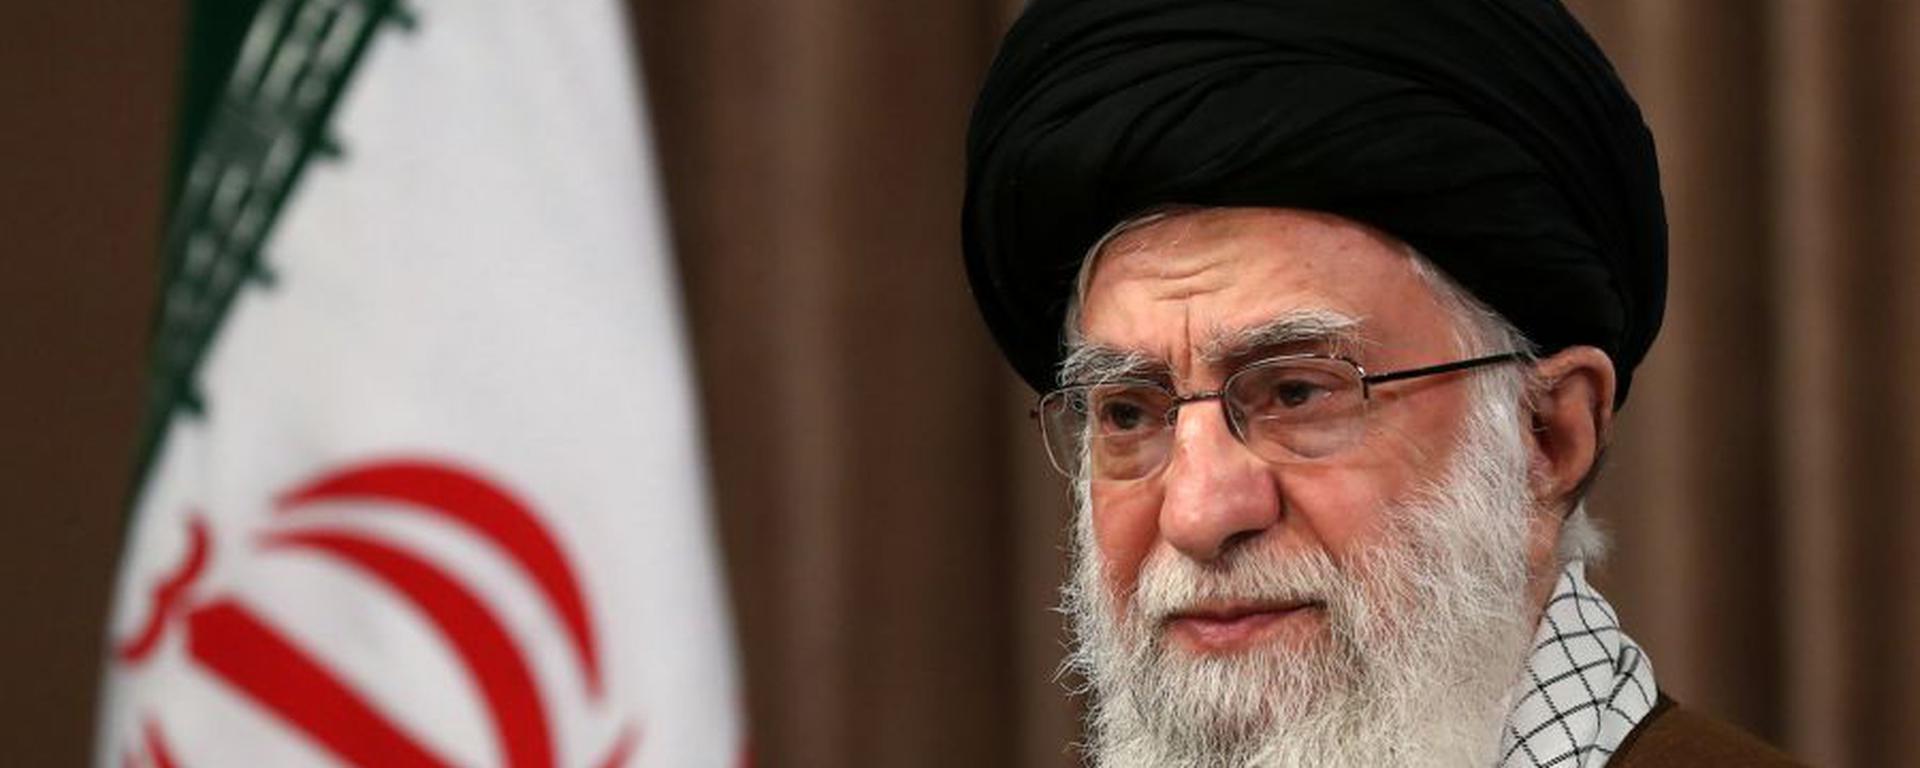 El conflicto entre EE. UU. e Irán se agudiza nuevamente: la teocracia que mueve los hilos de Medio Oriente